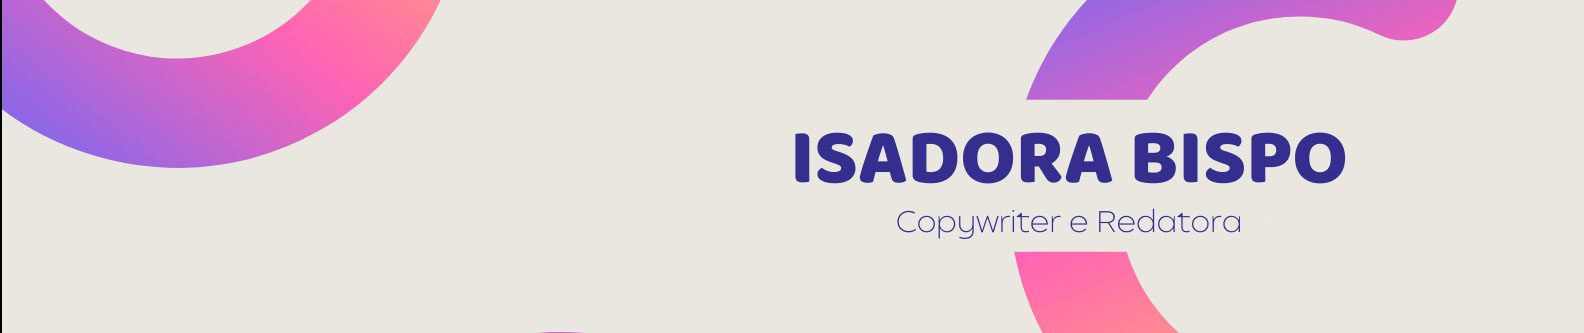 Isadora Bispo's profile banner